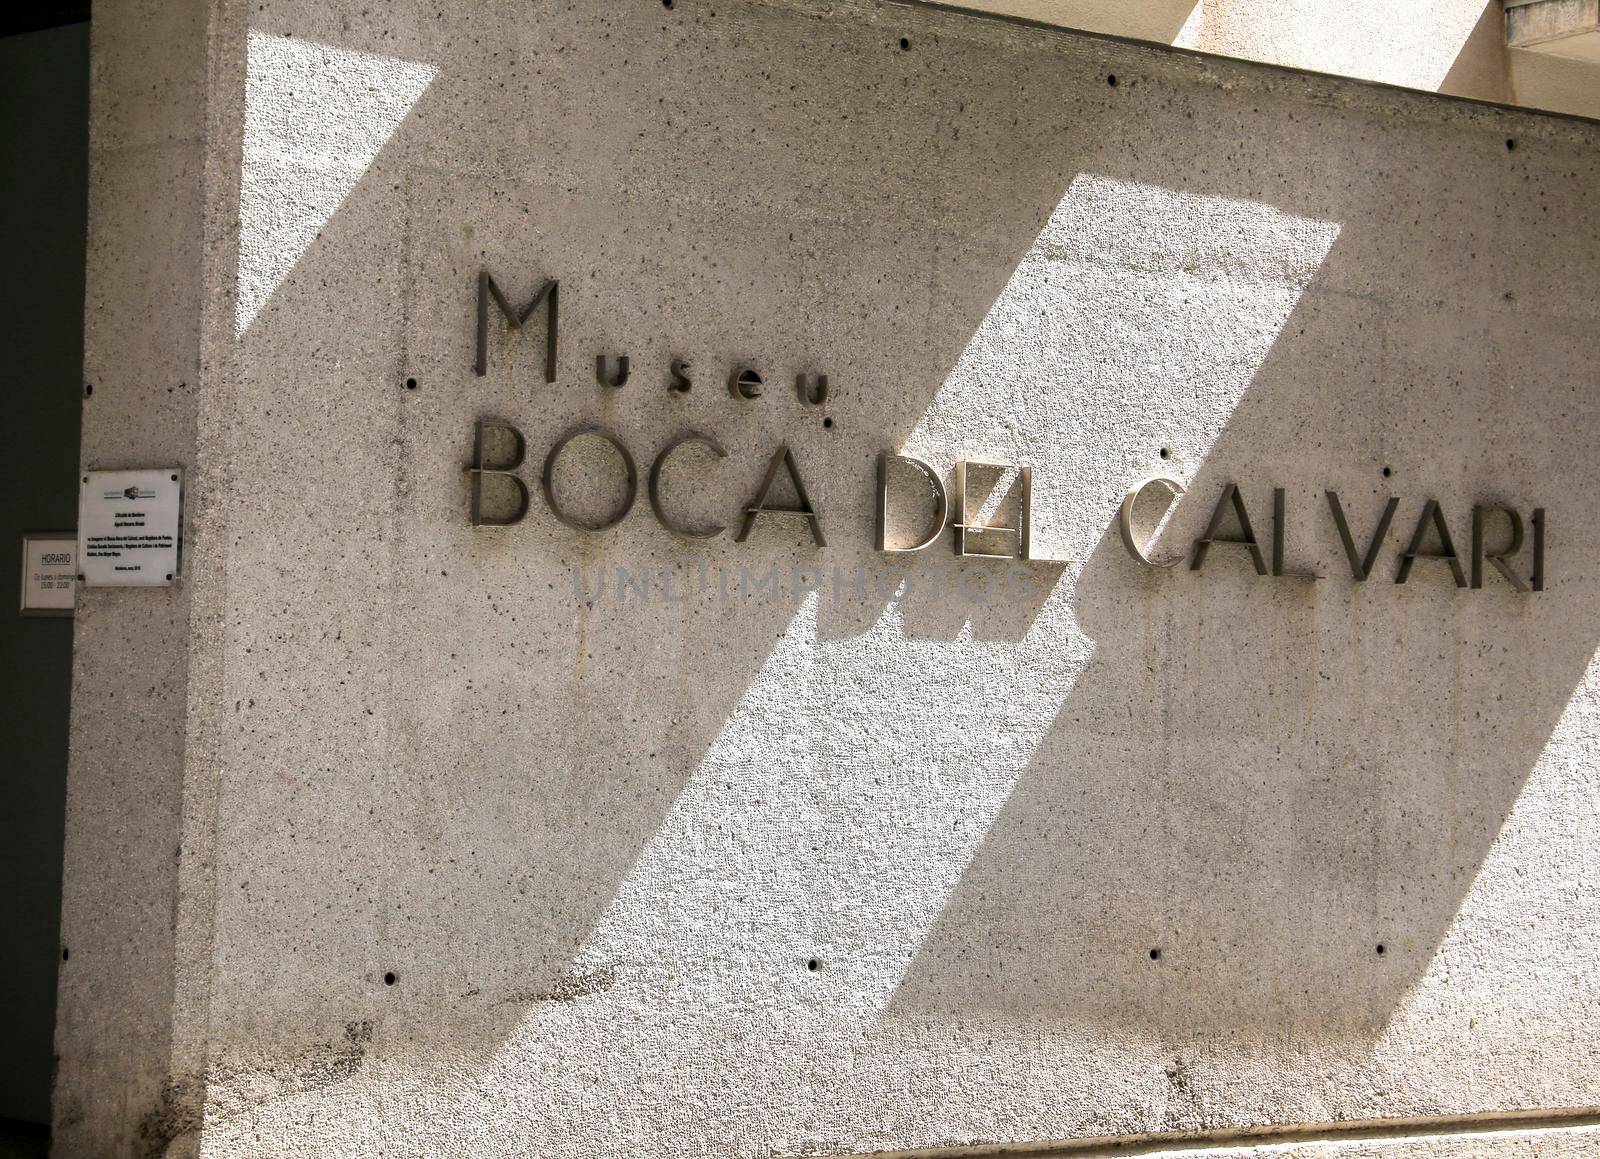 Main entrance and facade of the Boca del Calvari Museum by soniabonet